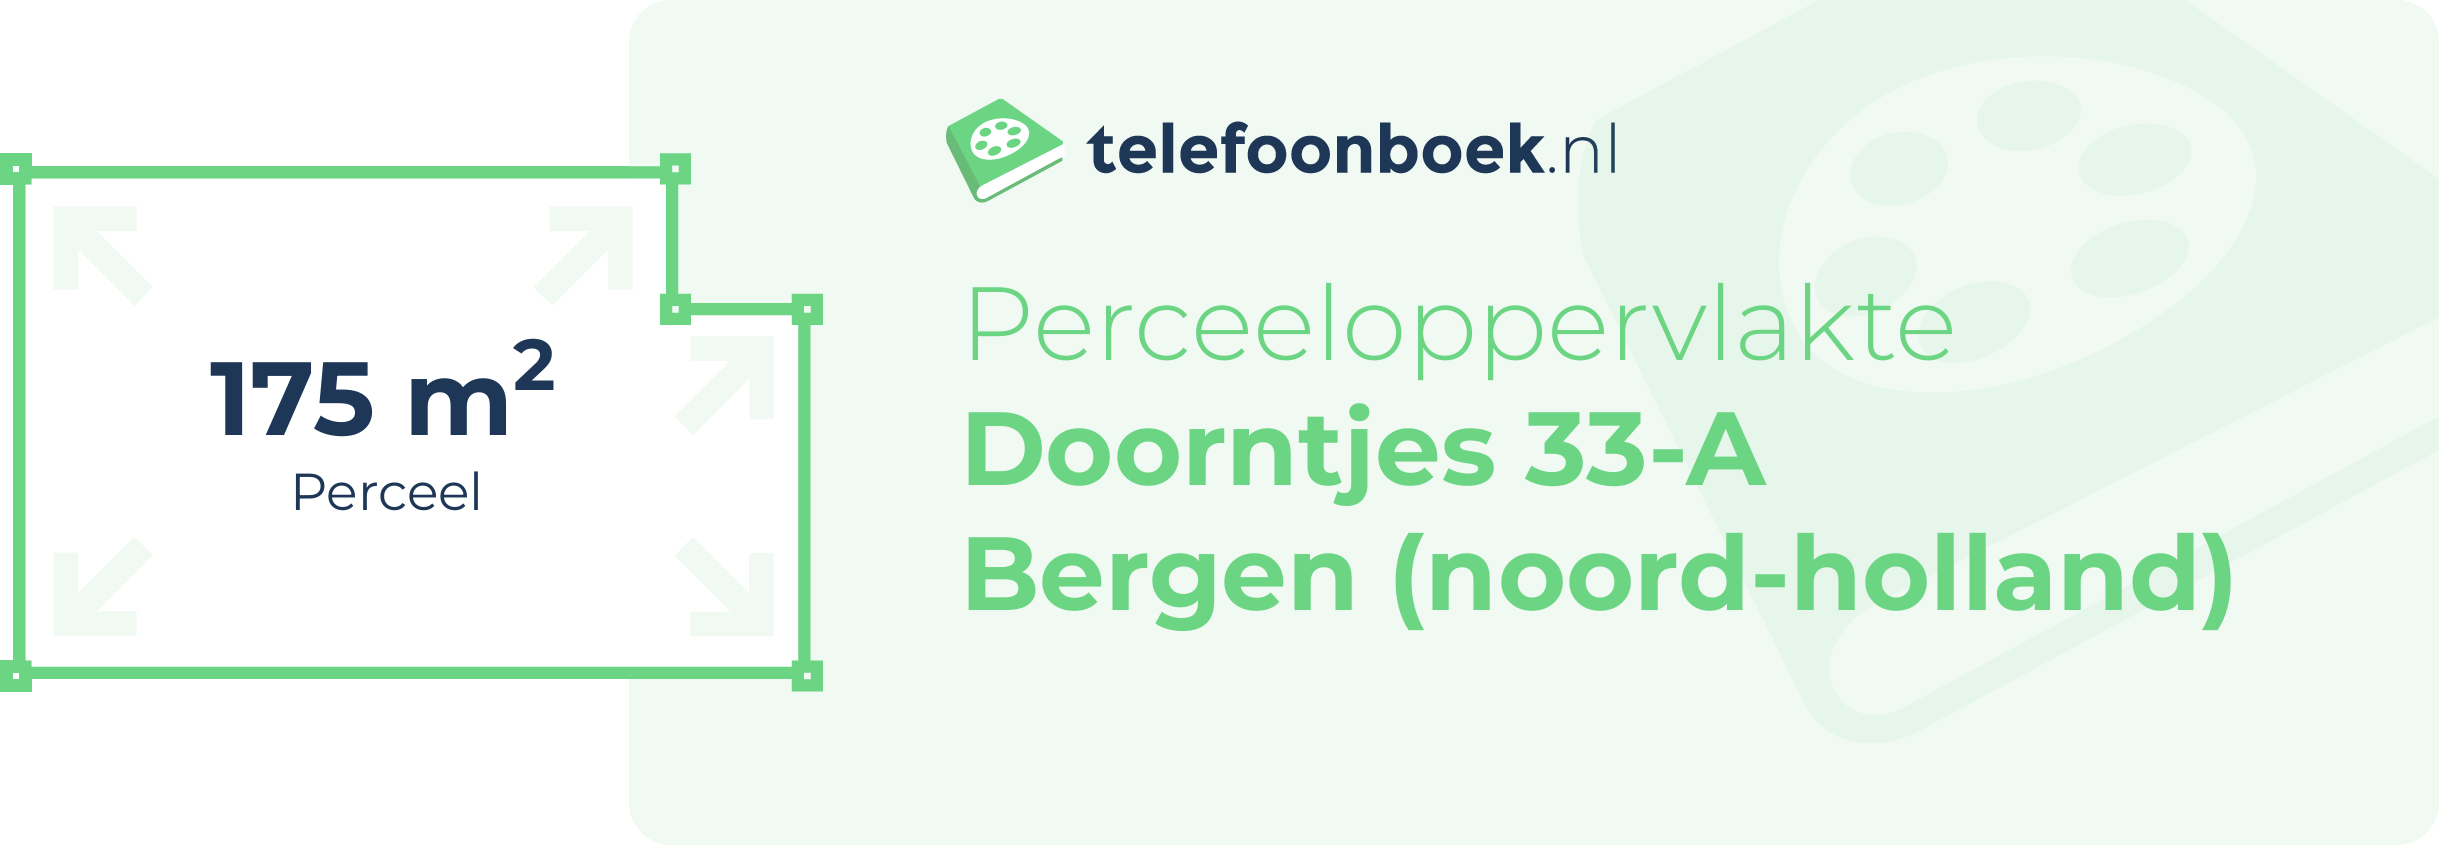 Perceeloppervlakte Doorntjes 33-A Bergen (Noord-Holland)